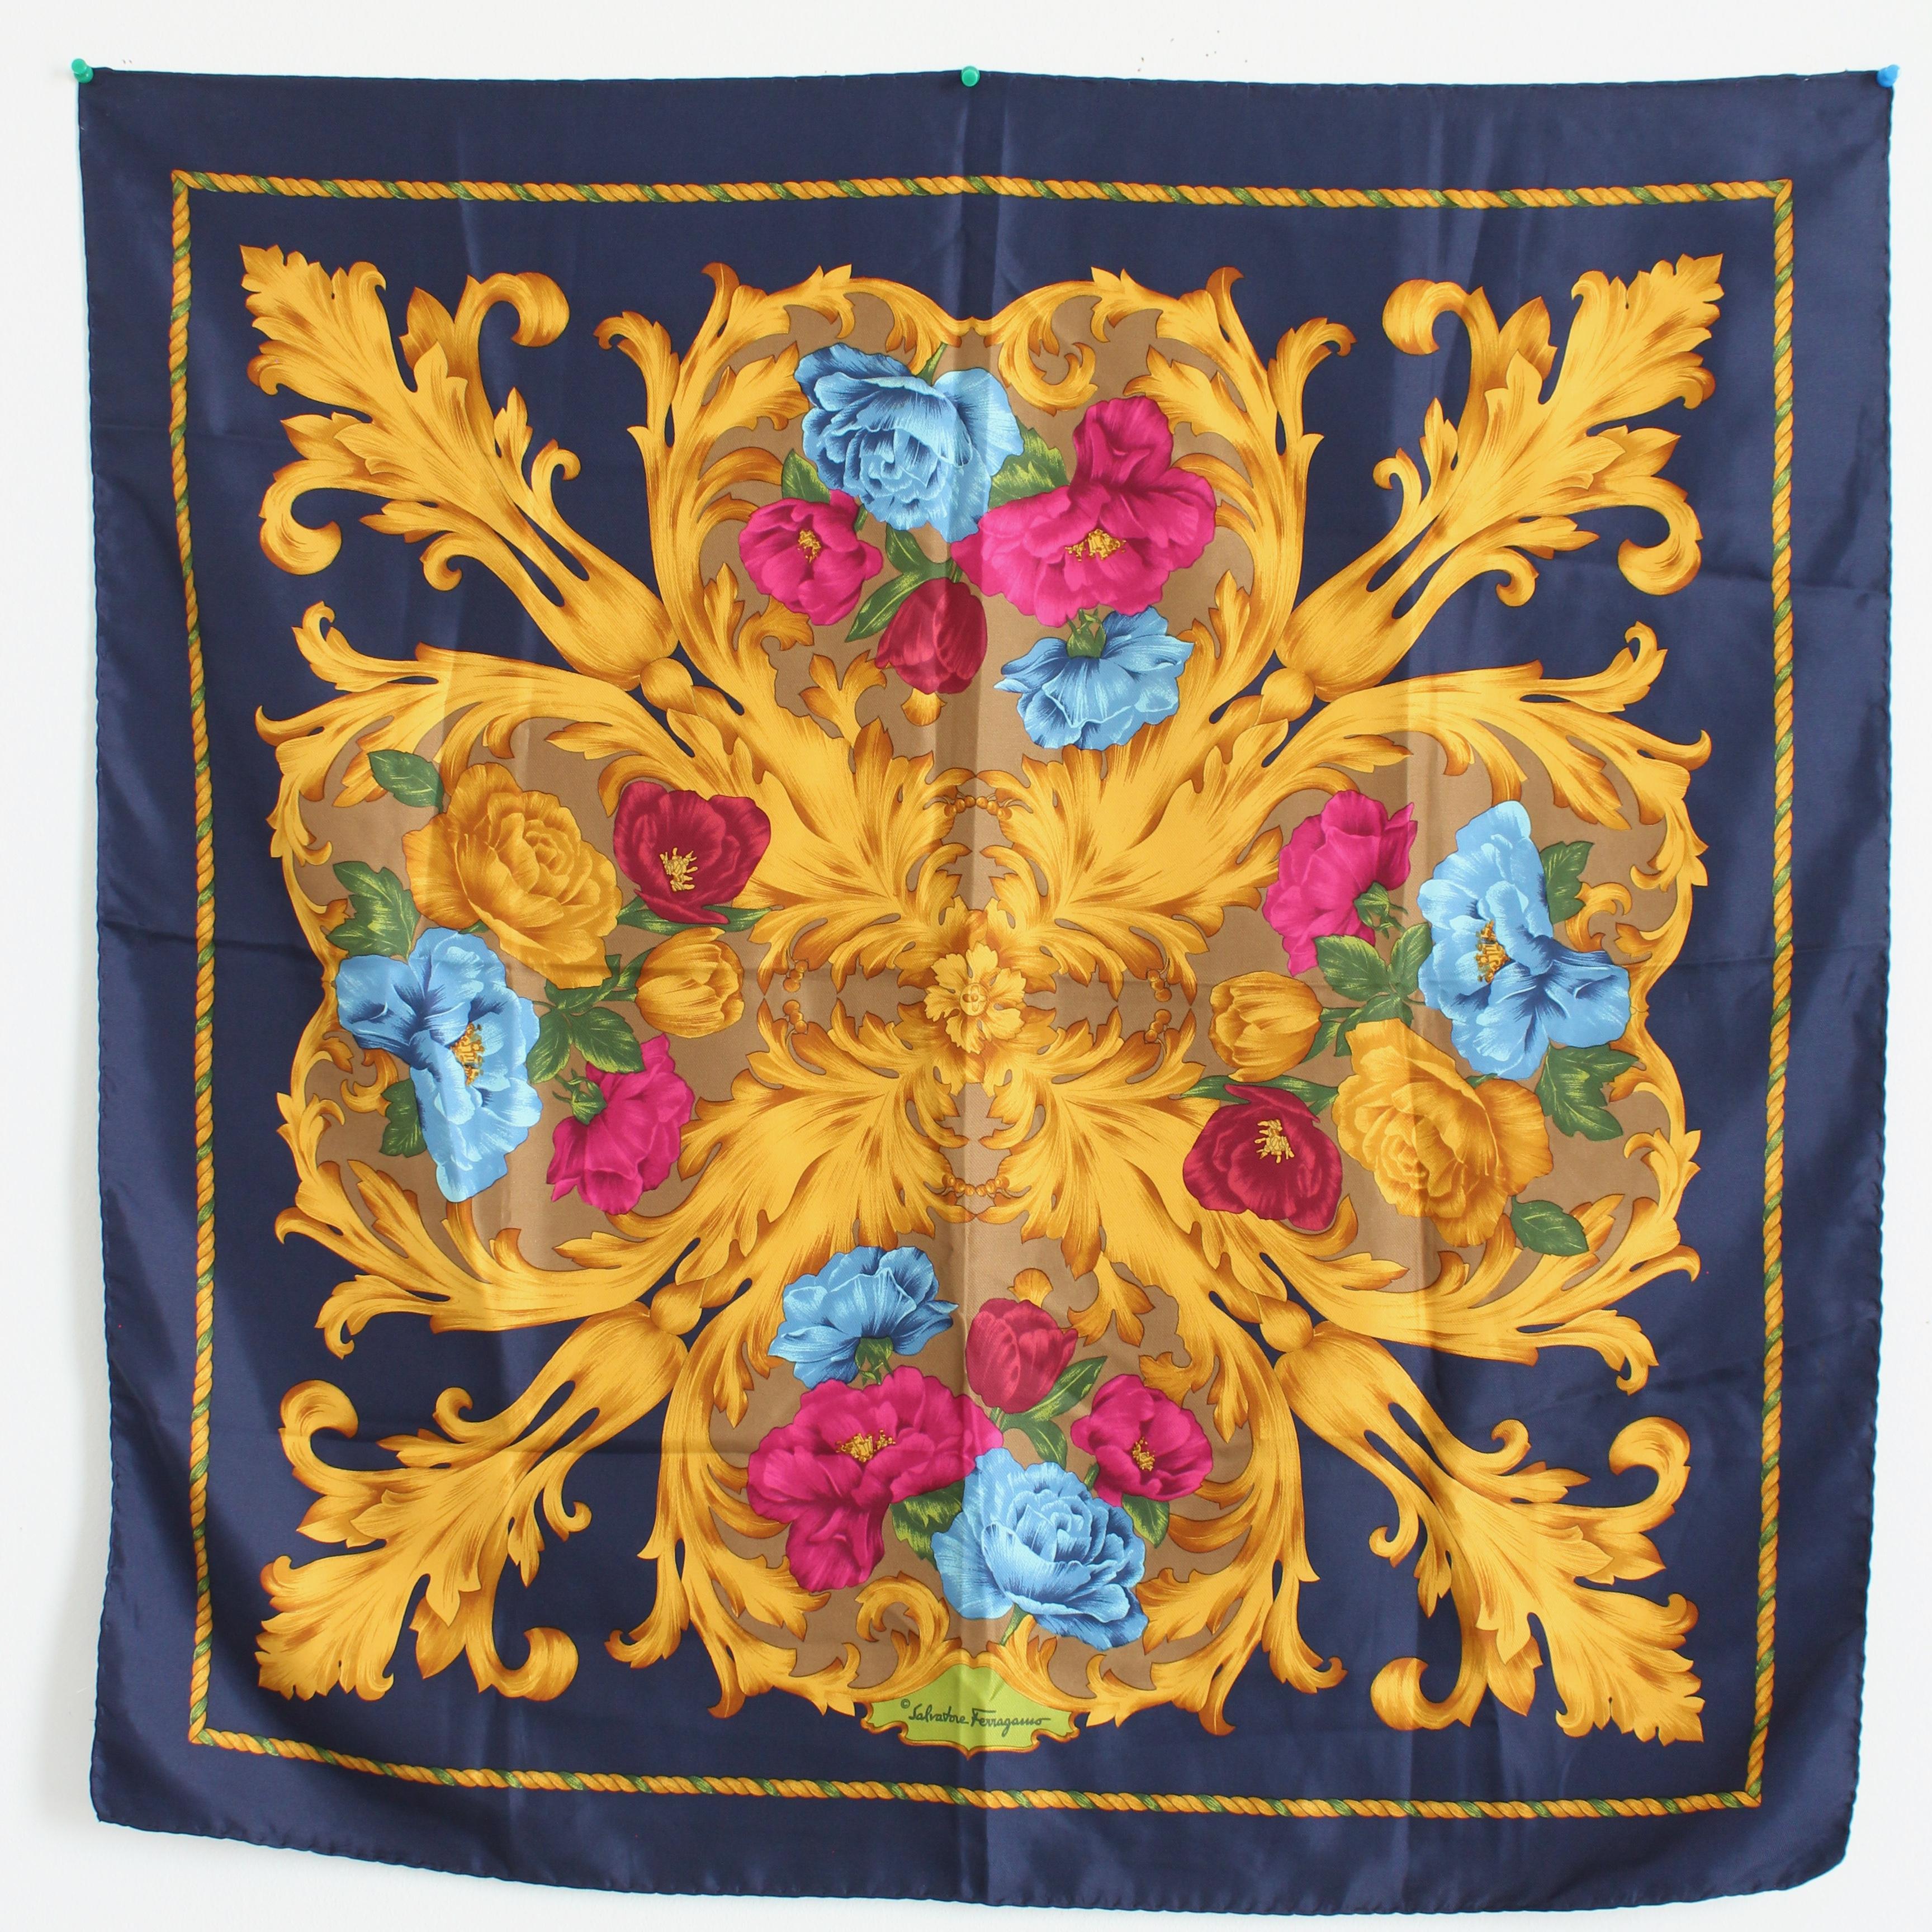 Ce foulard ou châle en soie a été réalisé par Salvatore Ferragamo, très probablement dans les années 90. Il présente des fleurs colorées roses, bleues et rouges avec des tiges dorées de style baroque sur un fond bleu marine. 

Un fabuleux foulard en